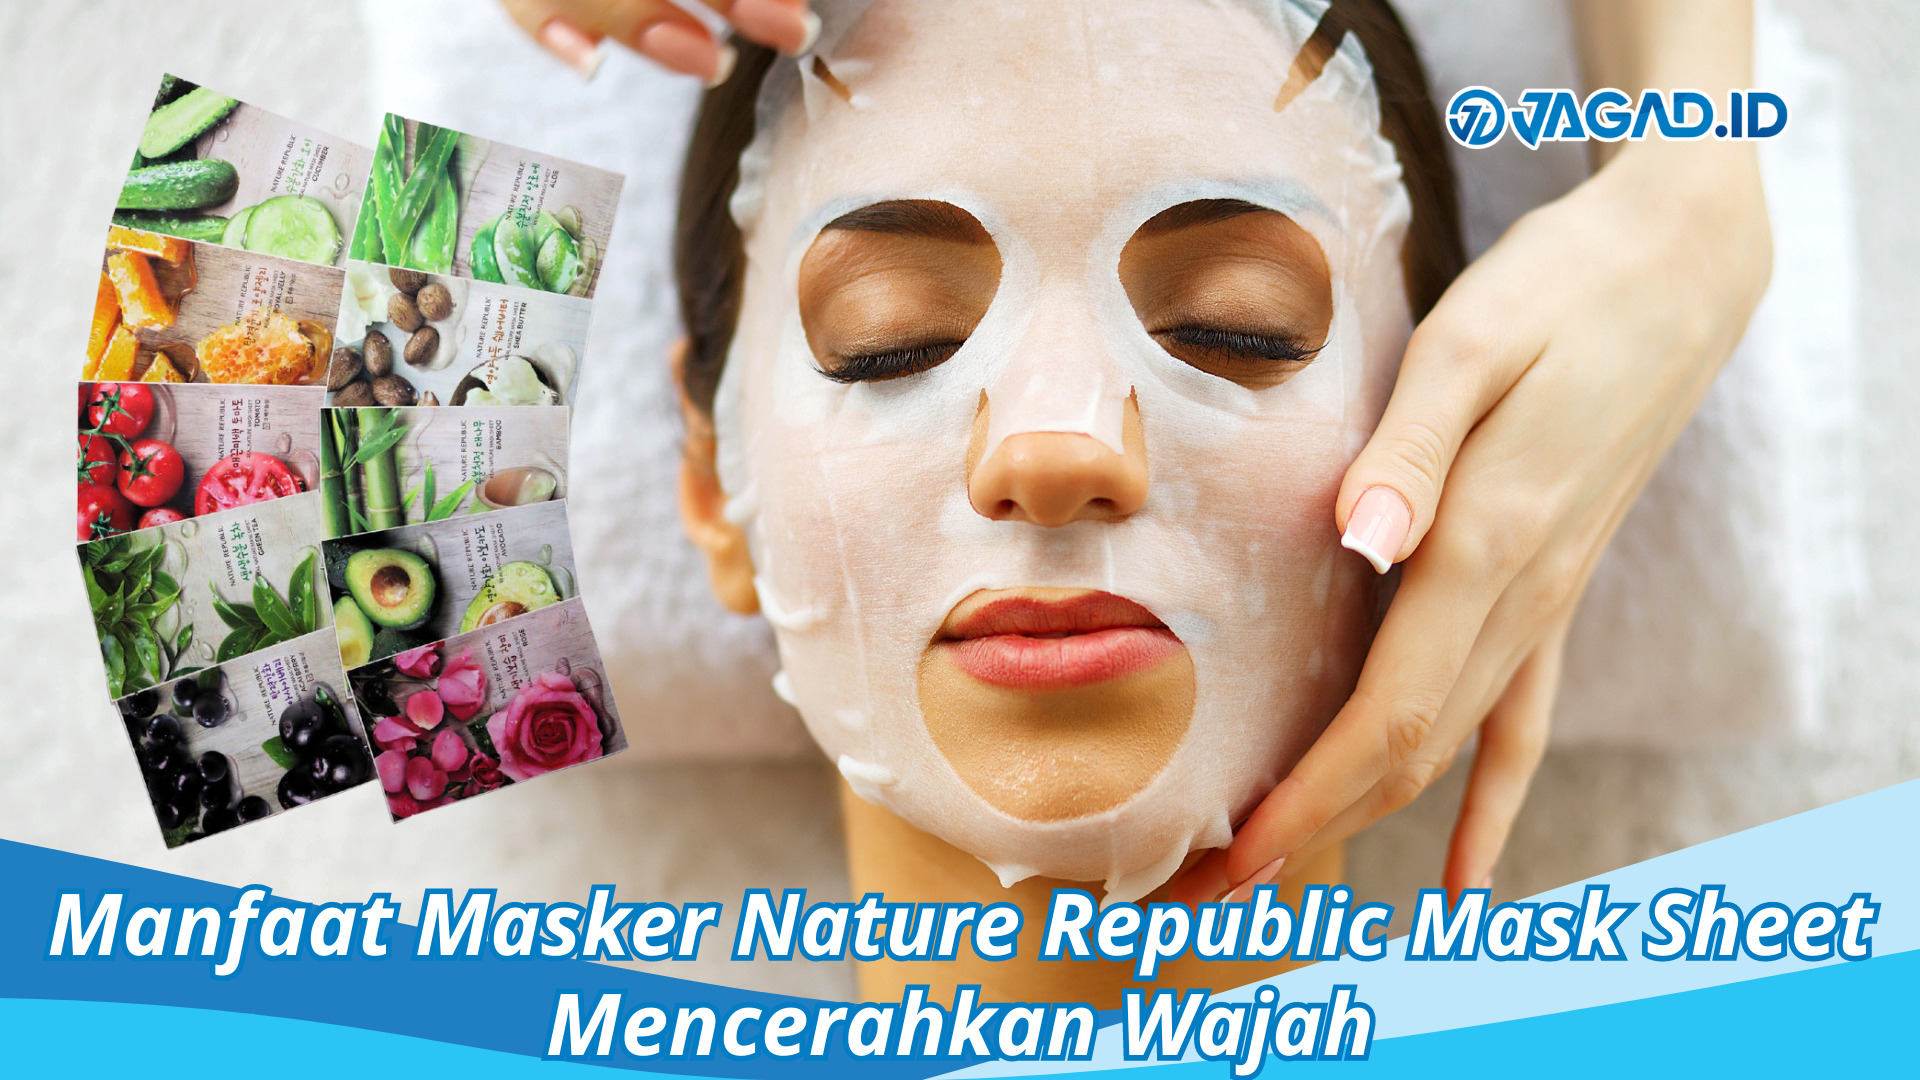 Manfaat Masker Nature Republic Mask Sheet